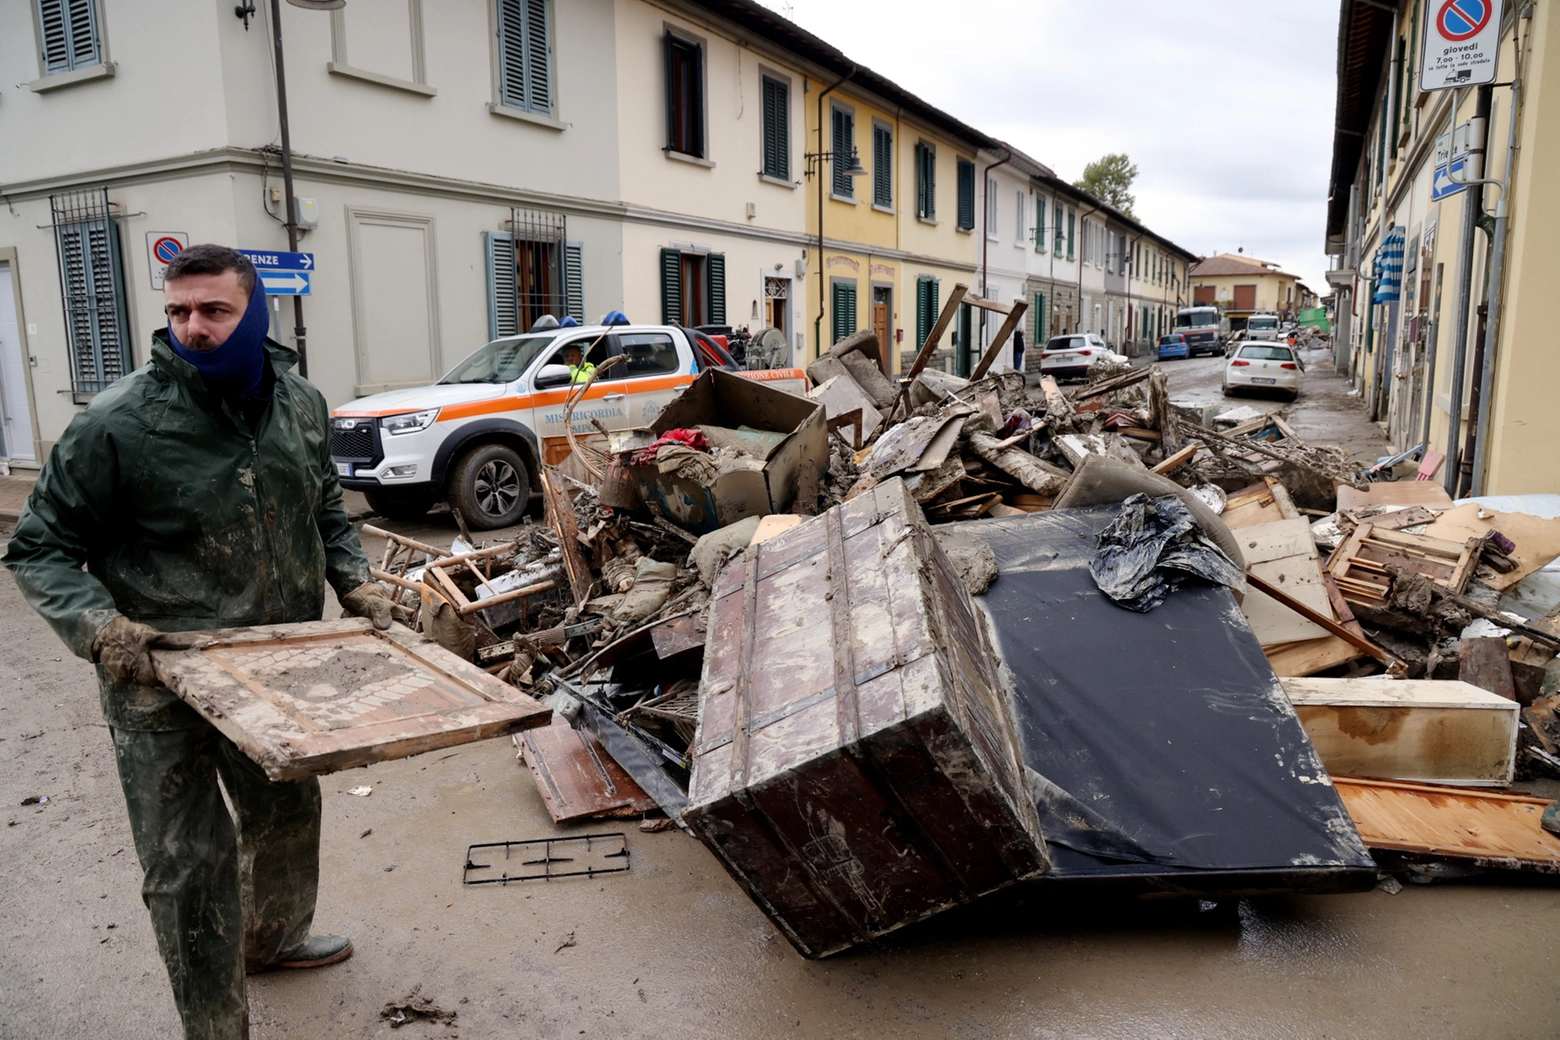 Campi Bisenzio, la rimozione di detriti e rifiuti dopo l'alluvione (Fotocronache Germogli)